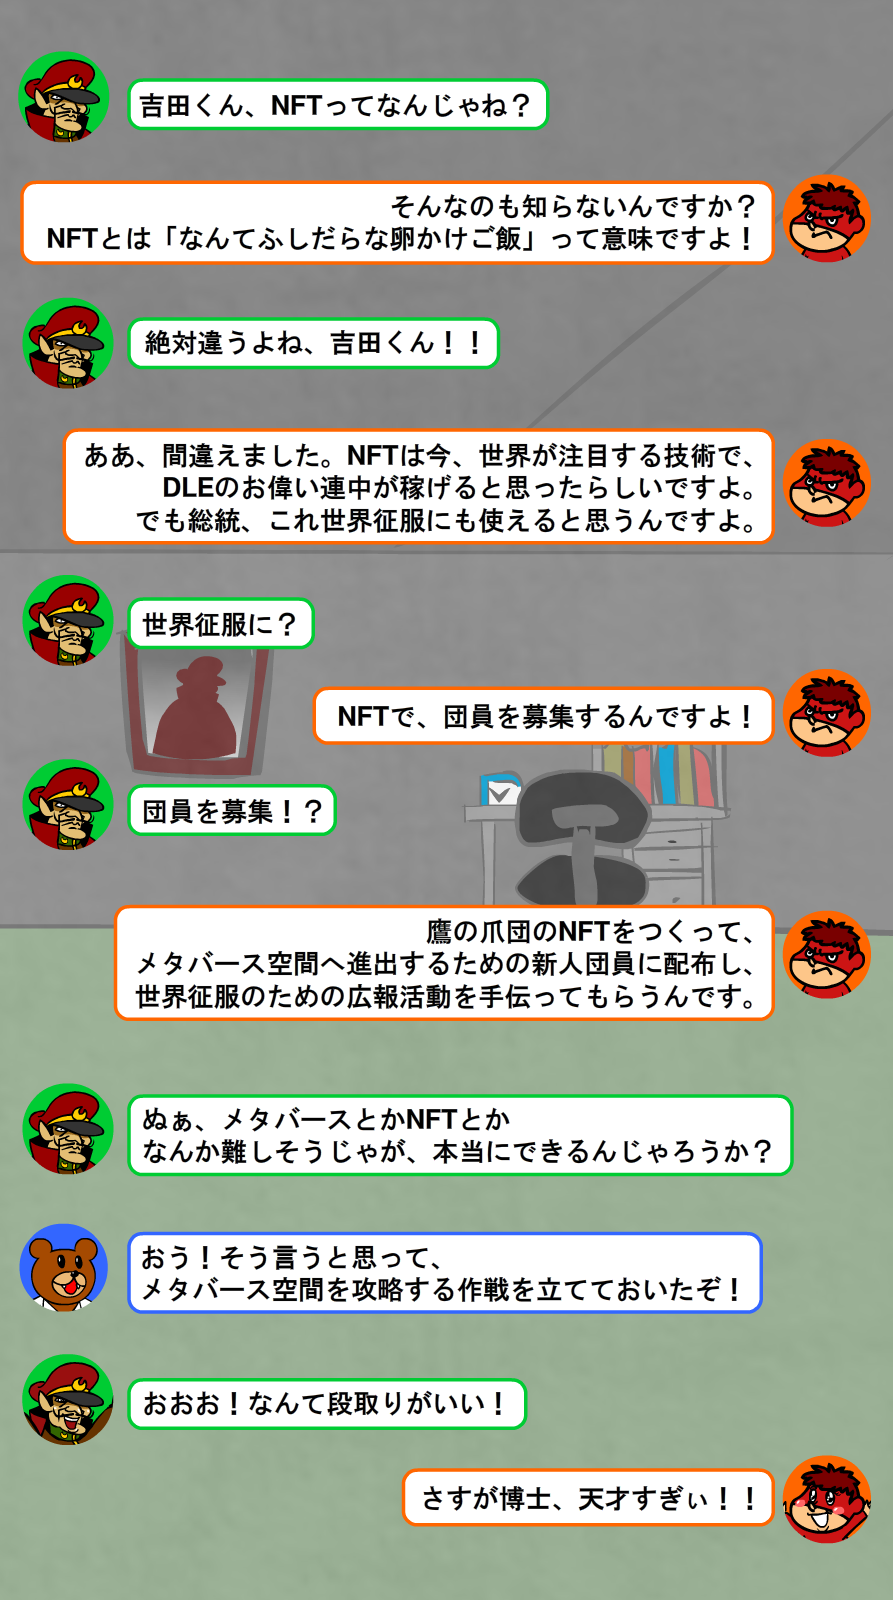 総統と吉田くんのNFTとは何かについての会話